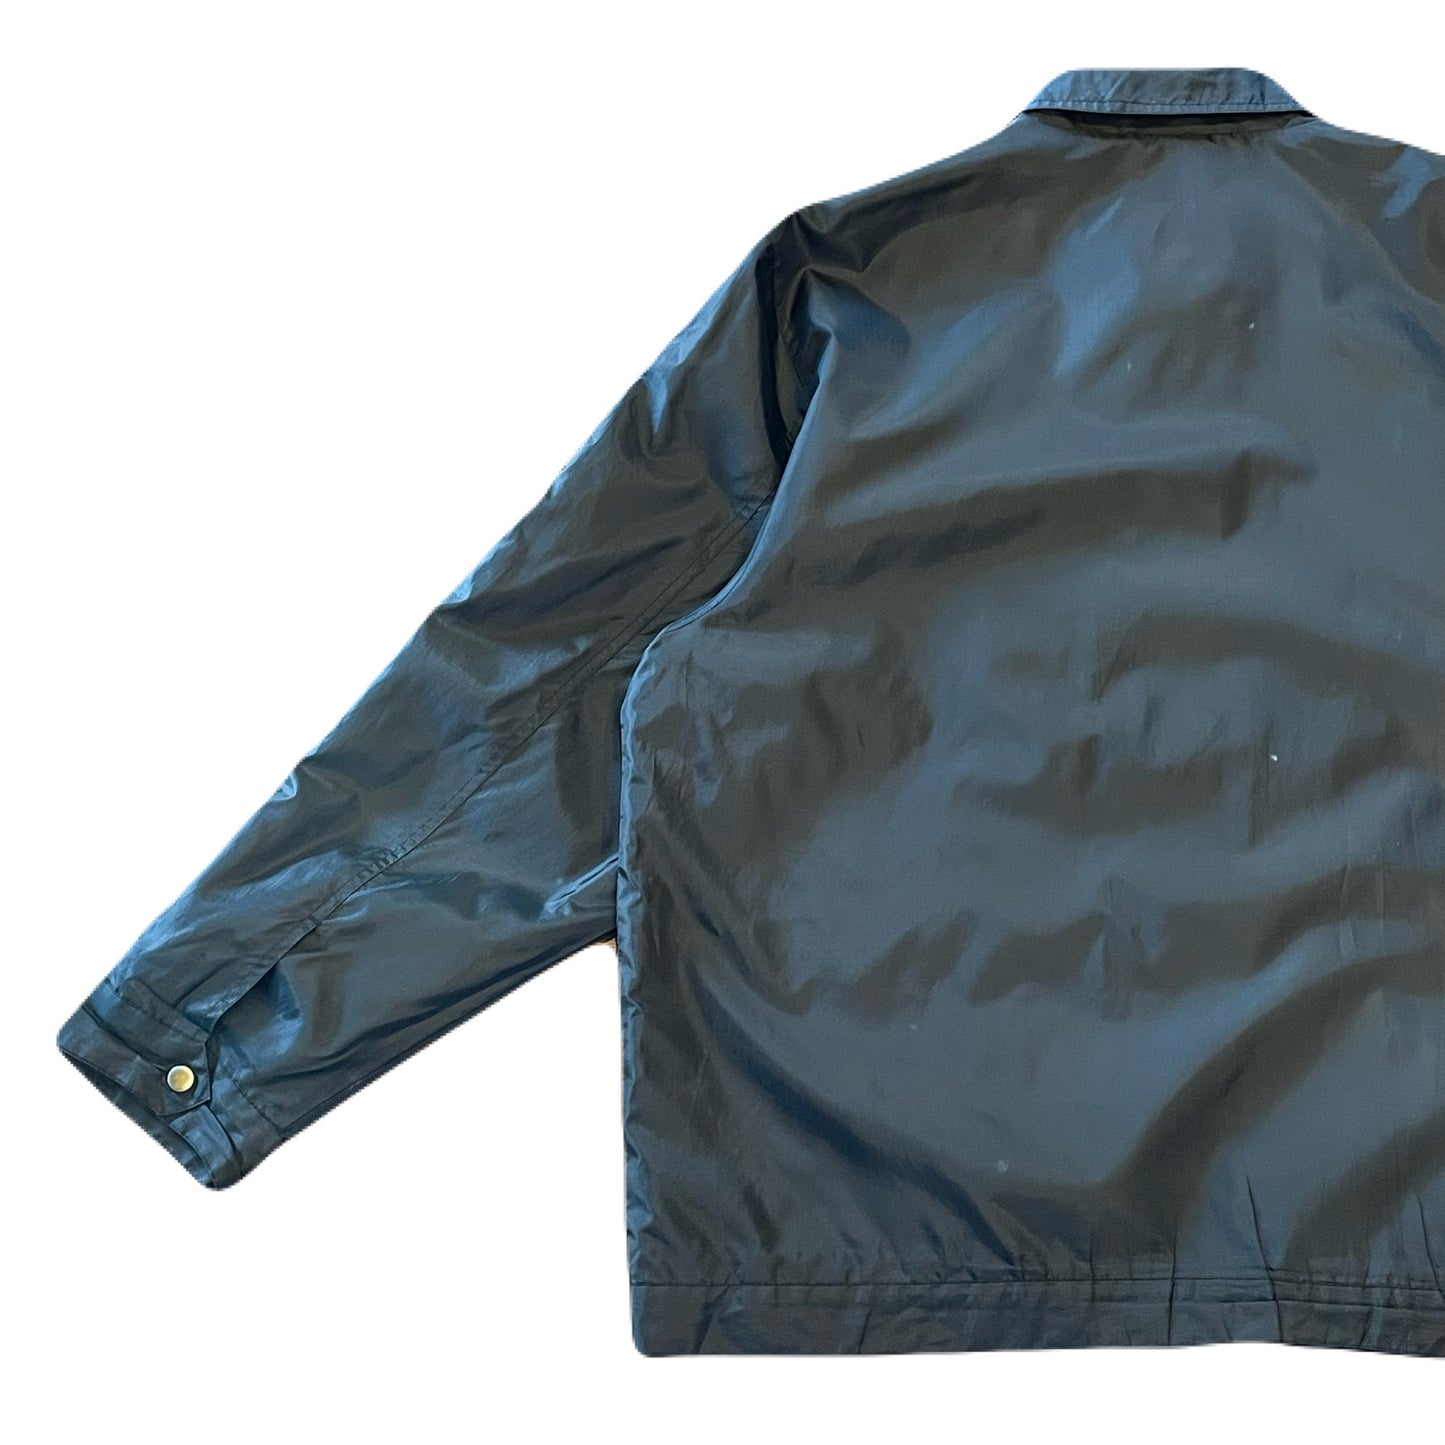 "DAMAGE active sportswear" nylon jacket　XL